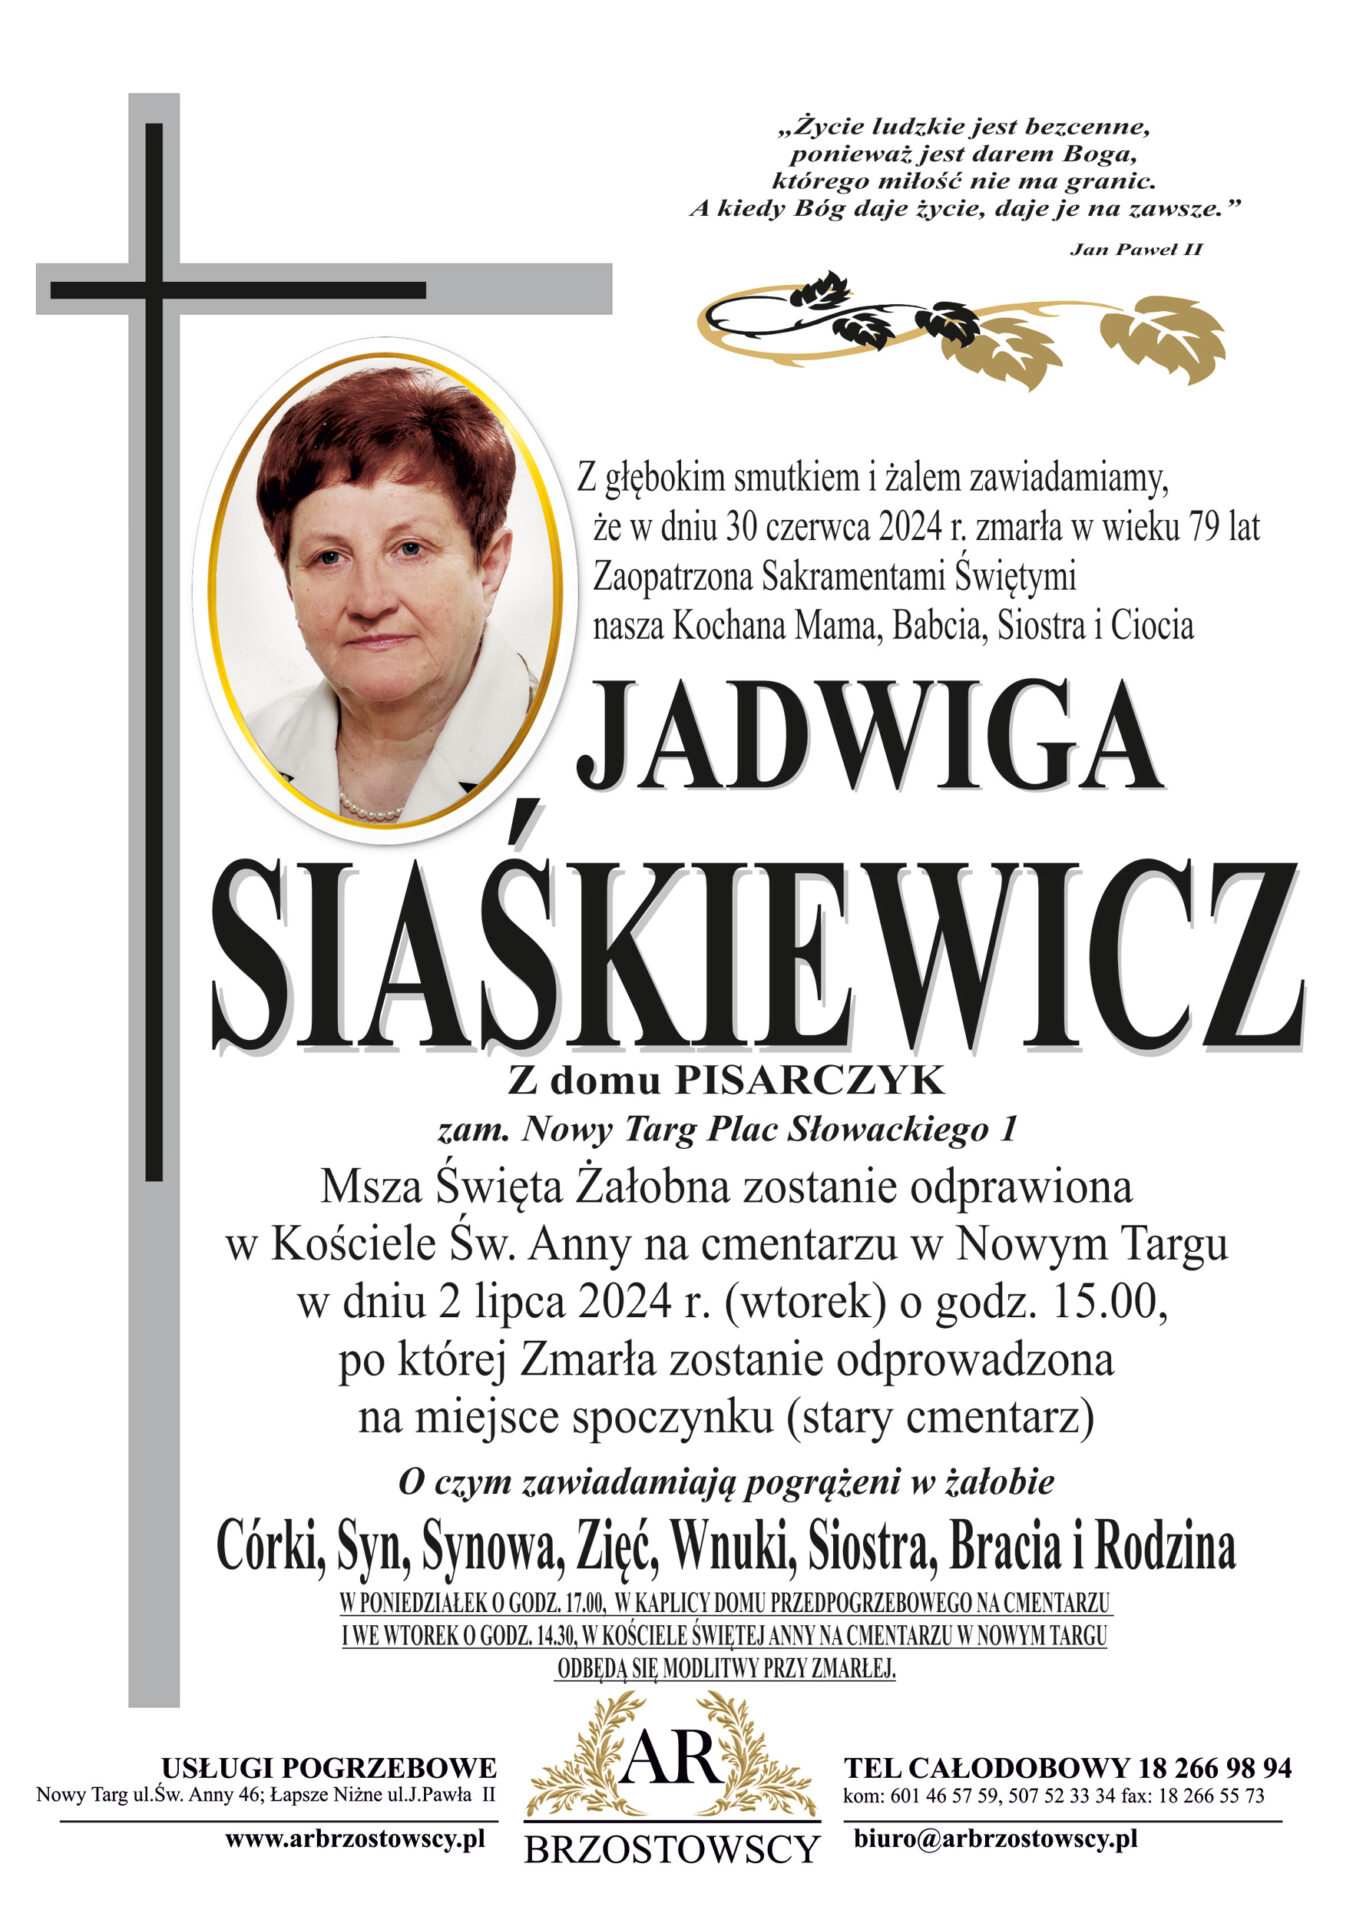 Jadwiga Siaśkiewicz